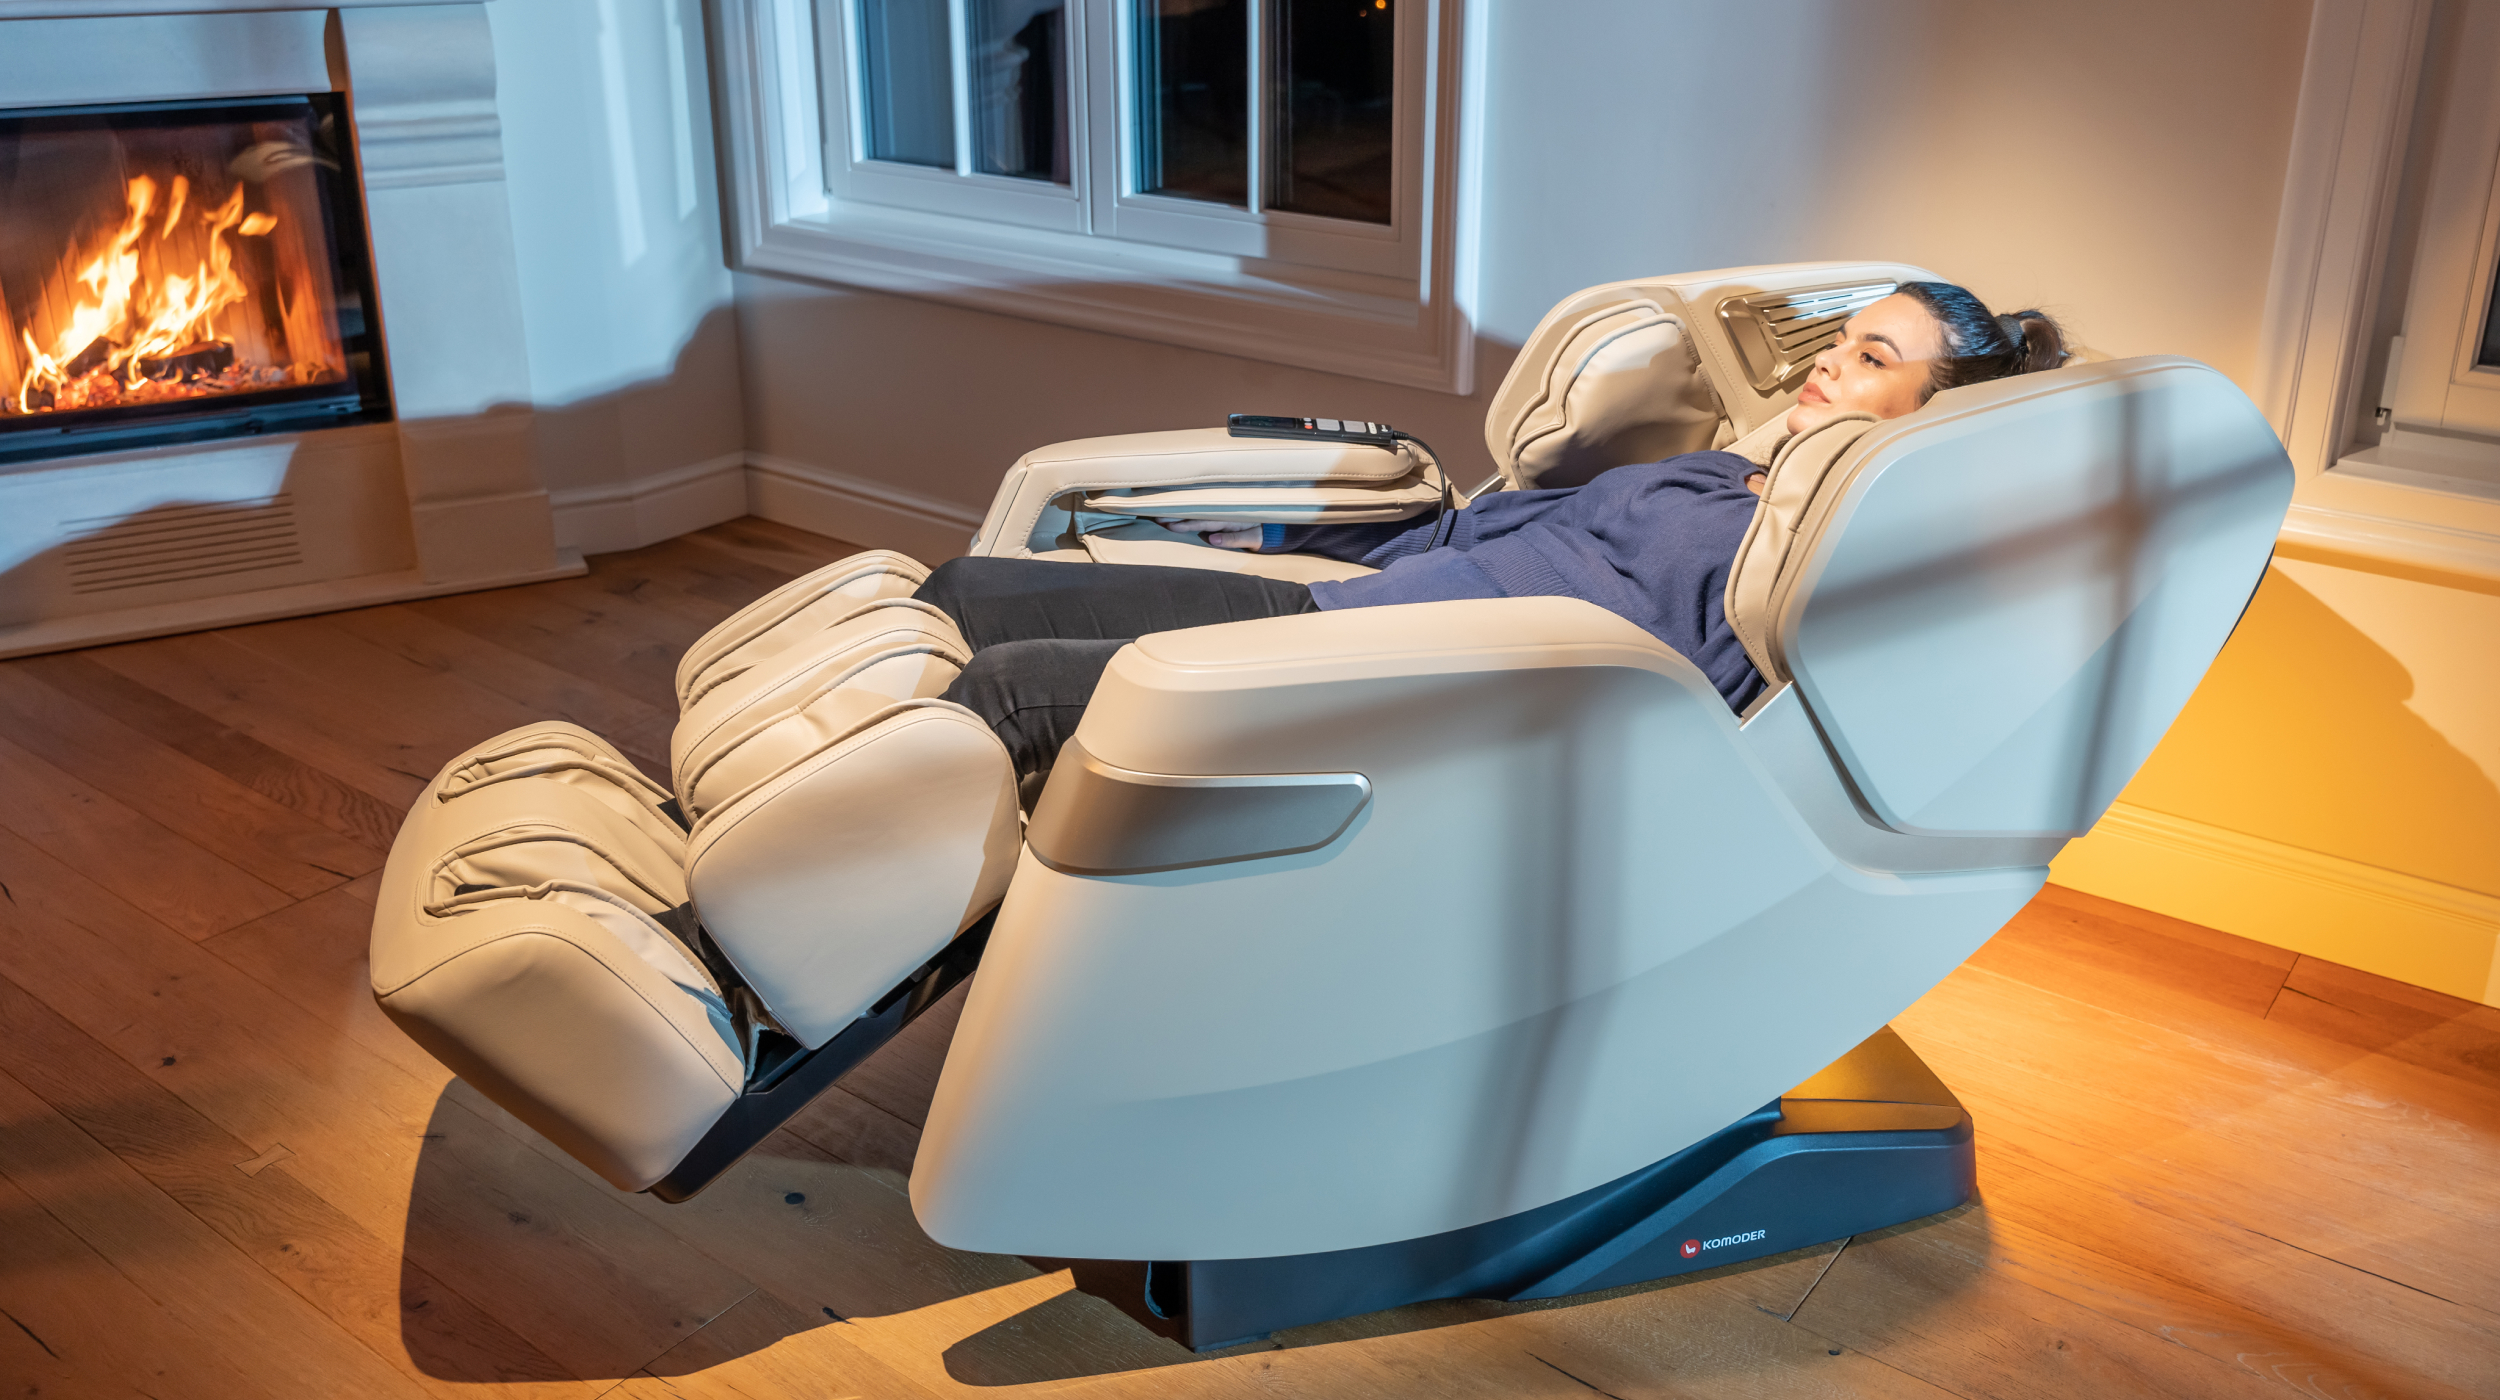 EVEREST FLEX II Massage Chair